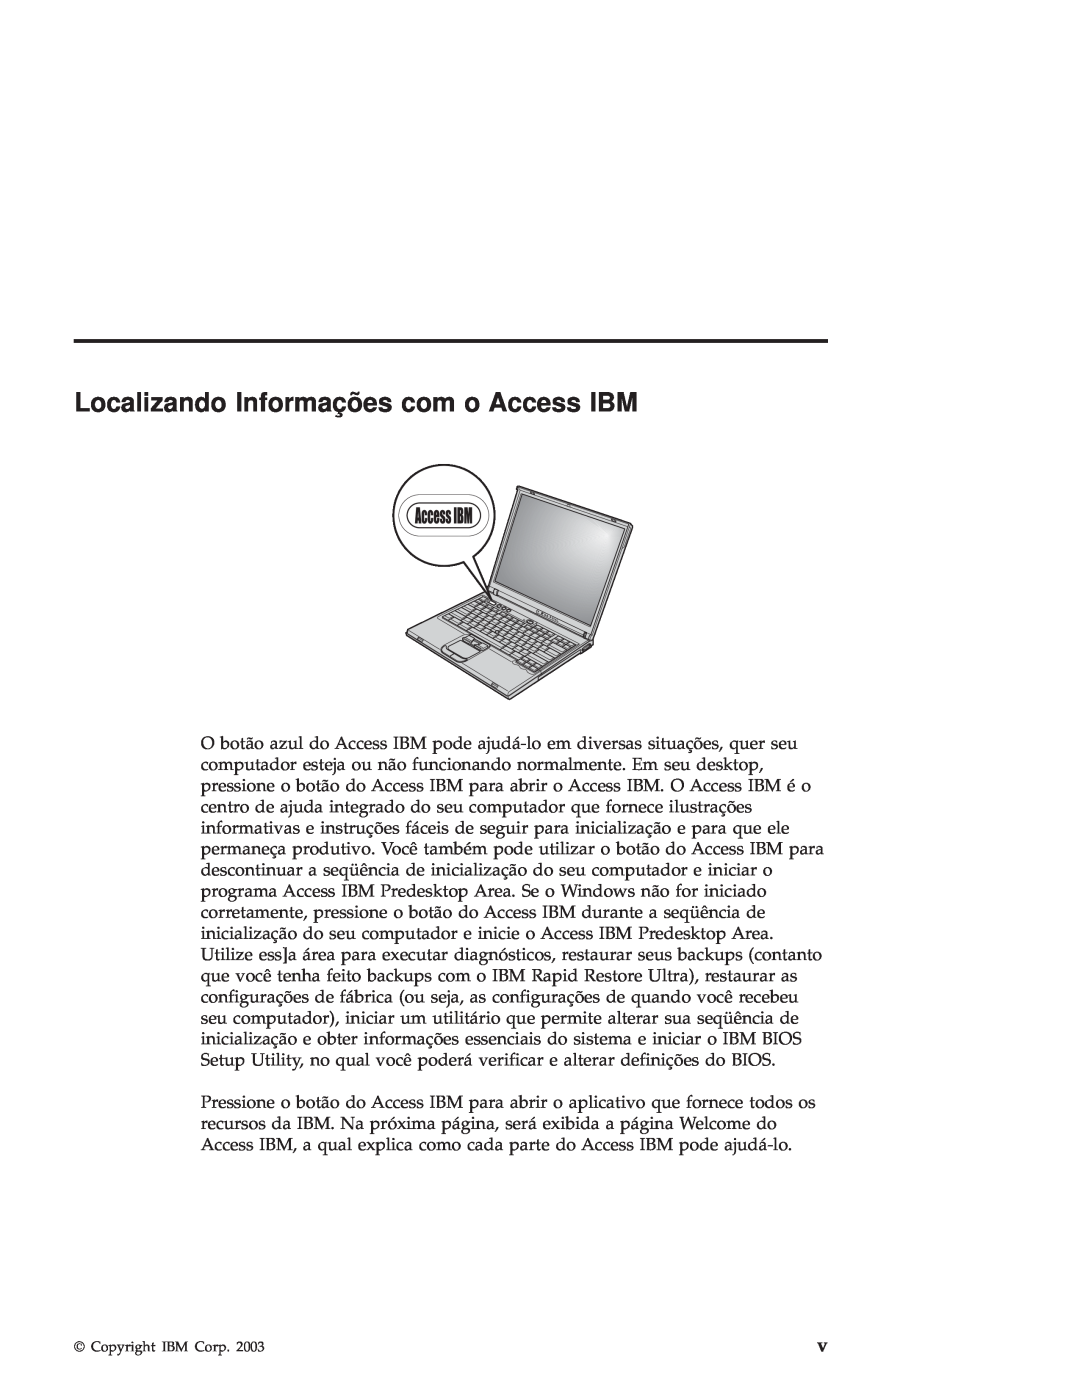 IBM R50 manual Localizando Informações com o Access IBM 